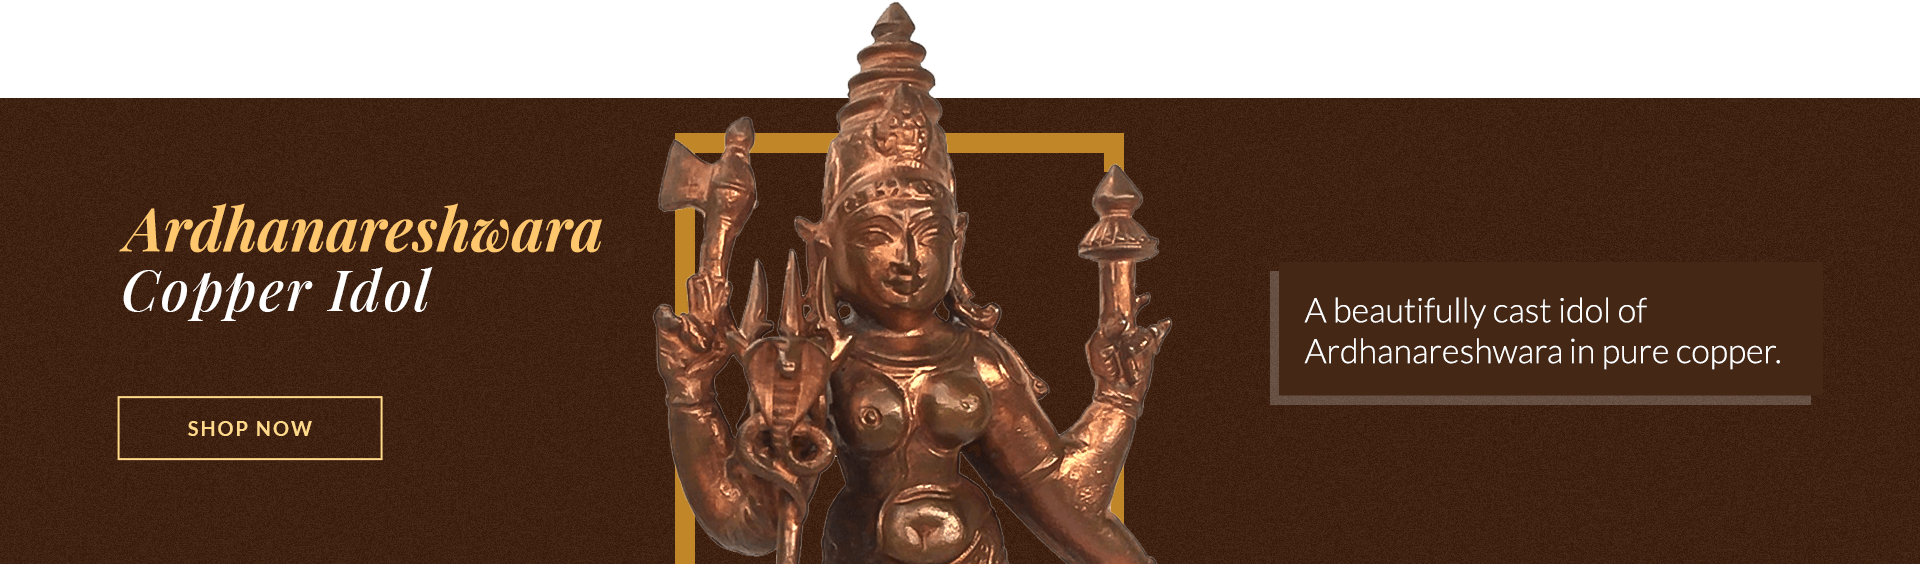 Ardhanareshwara-Copper-Idol